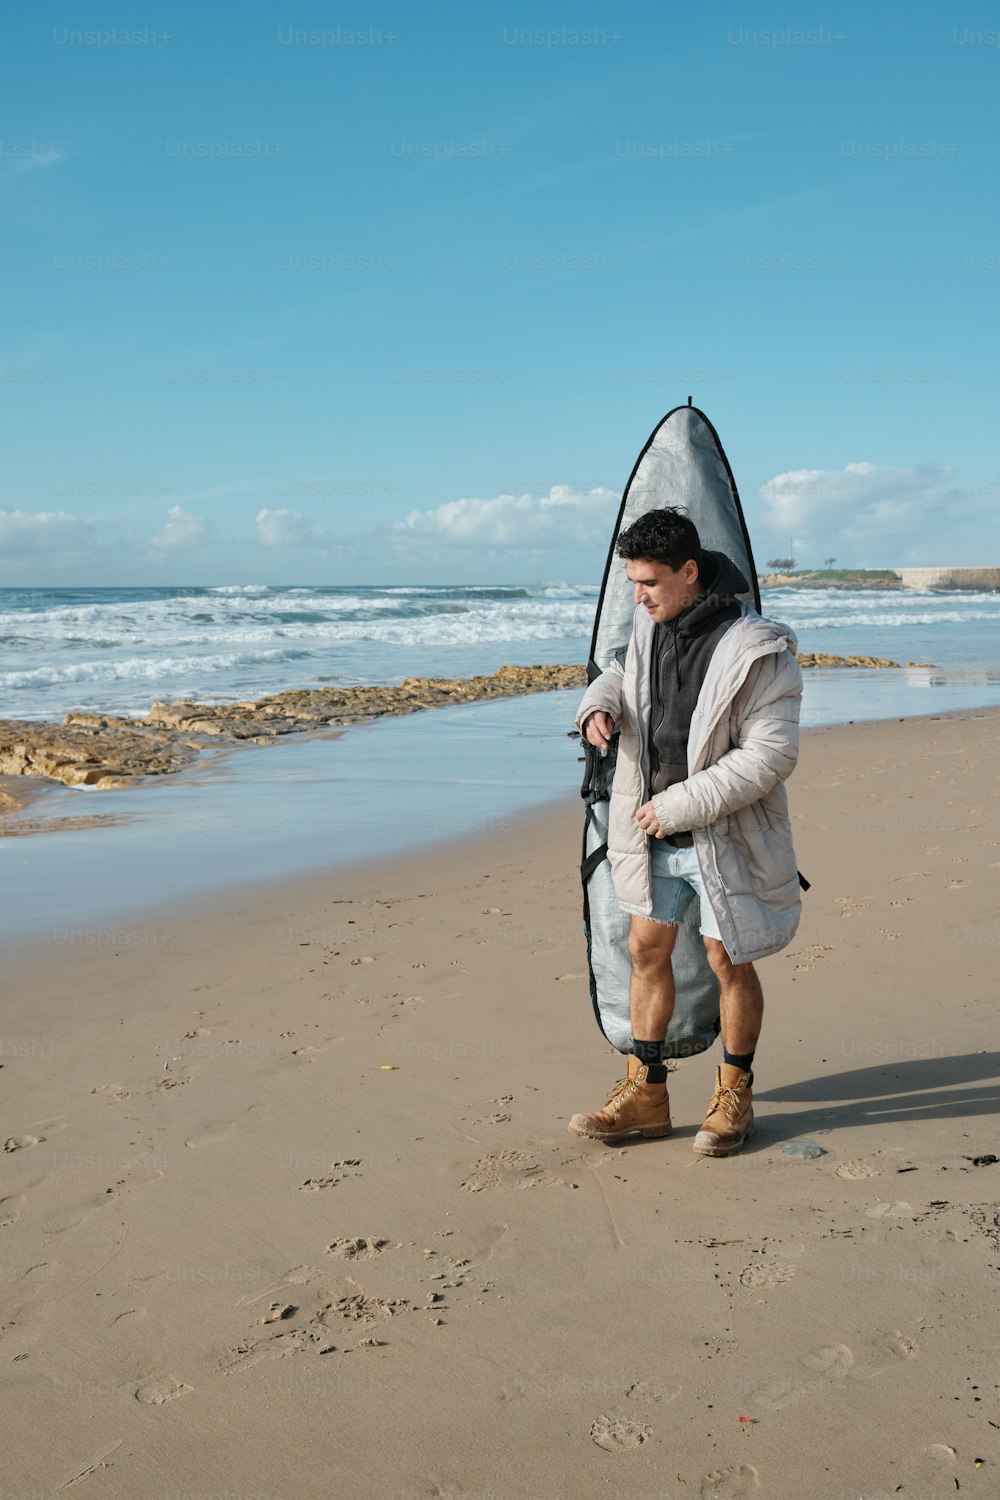 Un hombre parado en una playa sosteniendo una tabla de surf